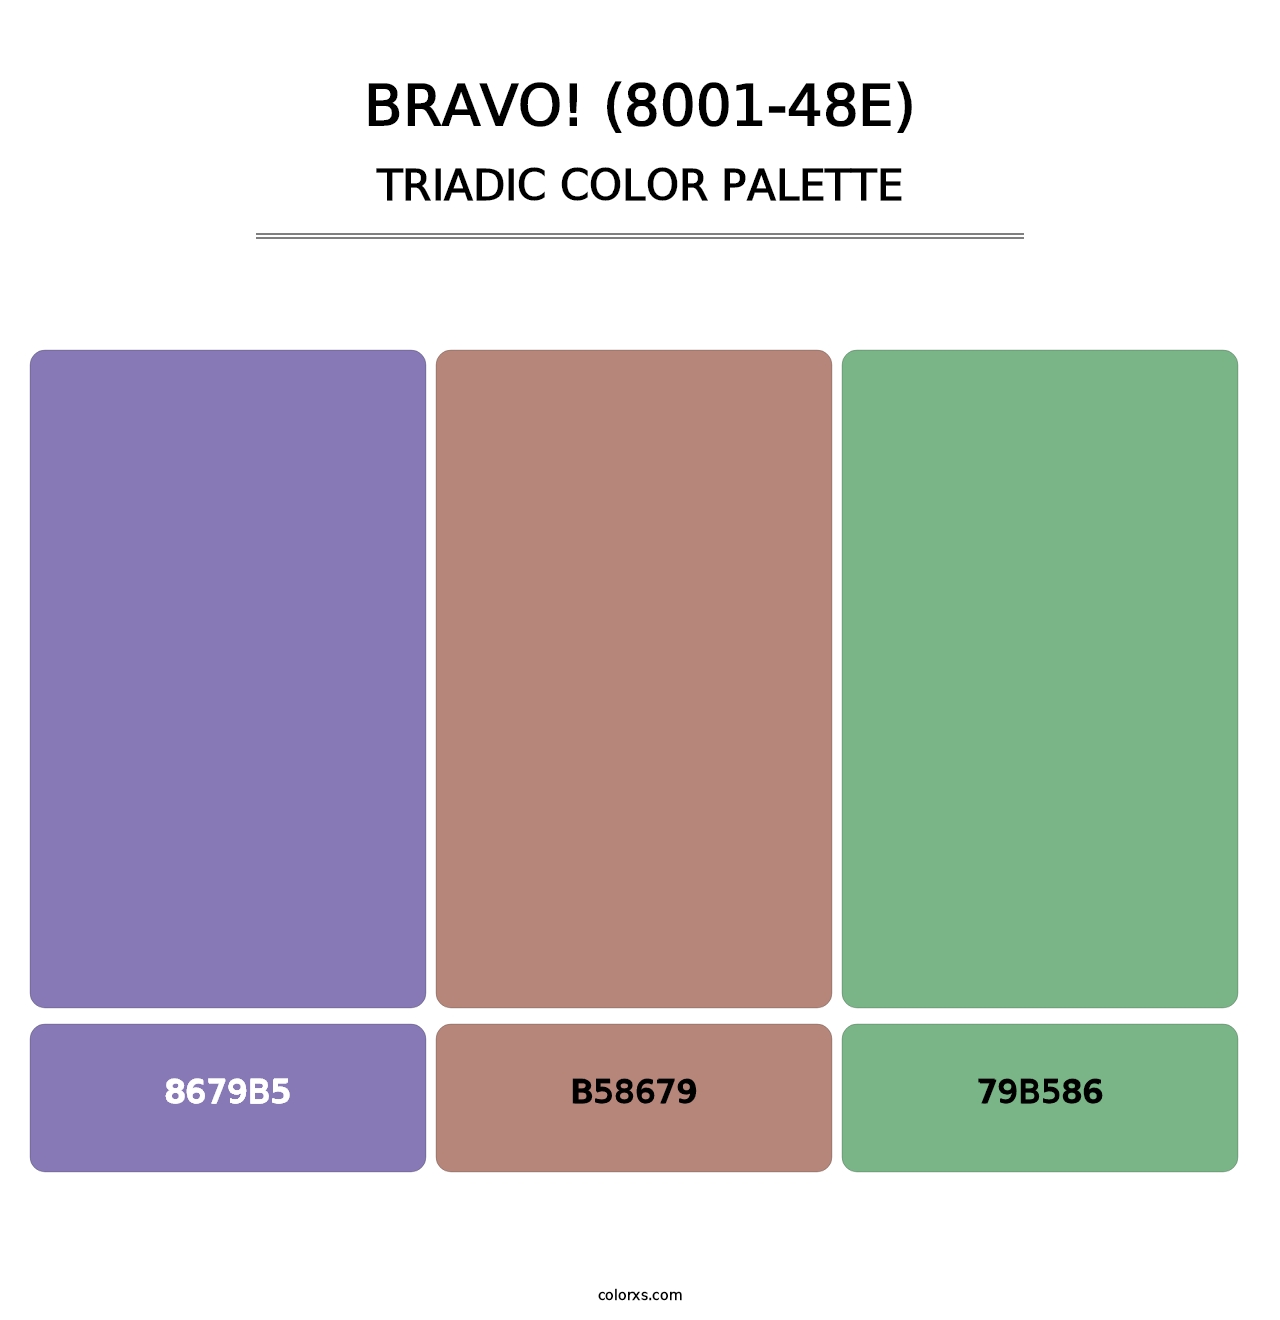 Bravo! (8001-48E) - Triadic Color Palette